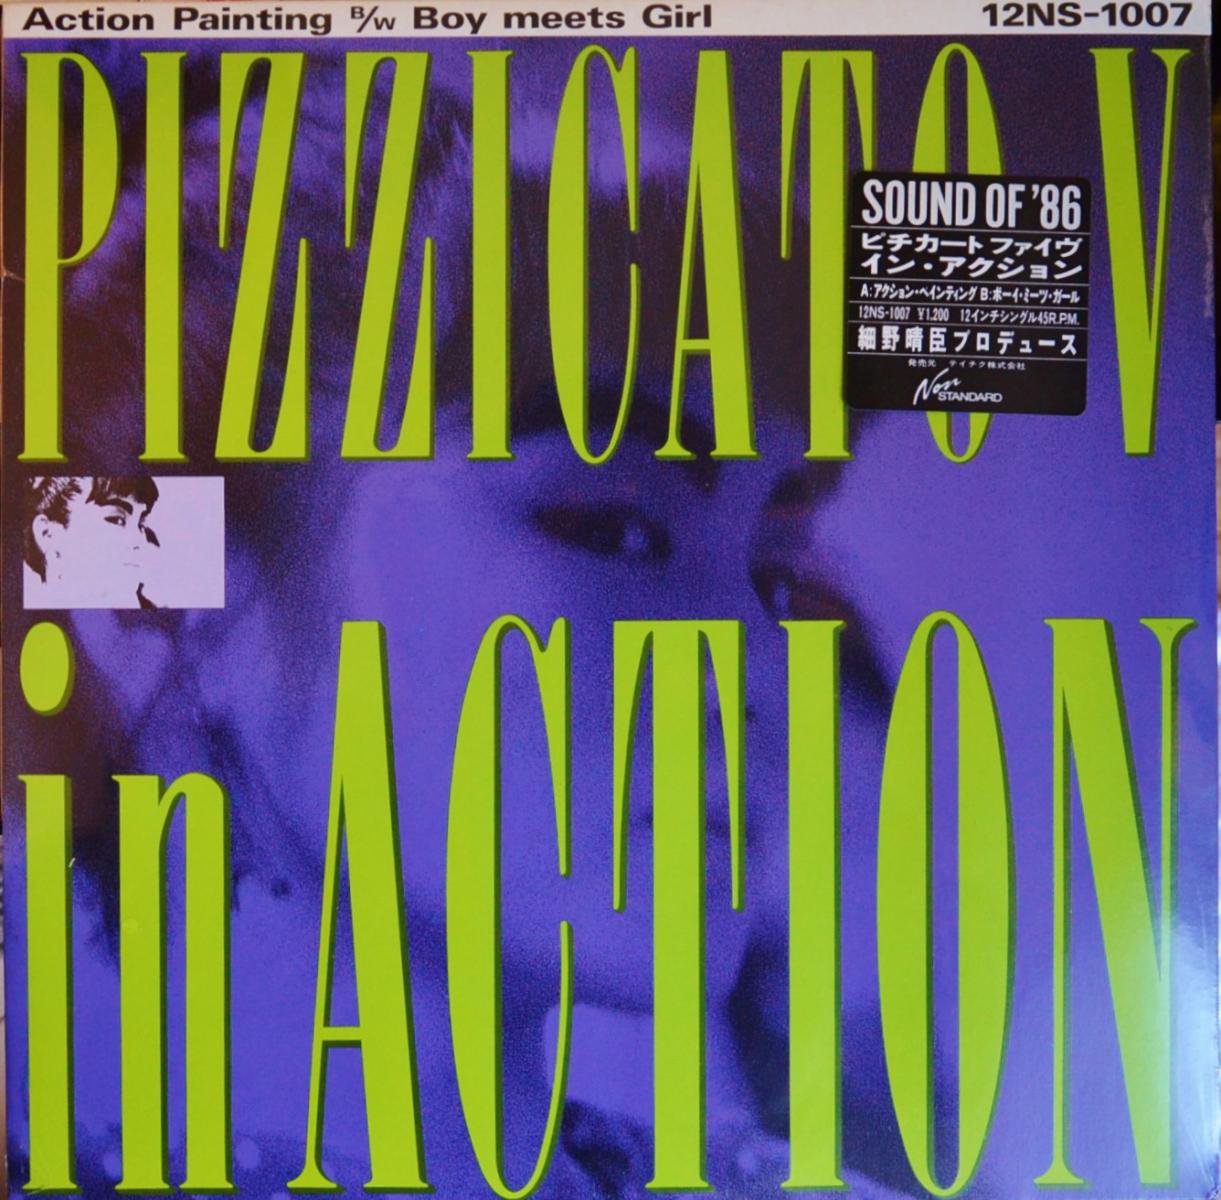 ピチカート・ファイヴ PIZZICATO V / イン・アクション IN ACTION (12